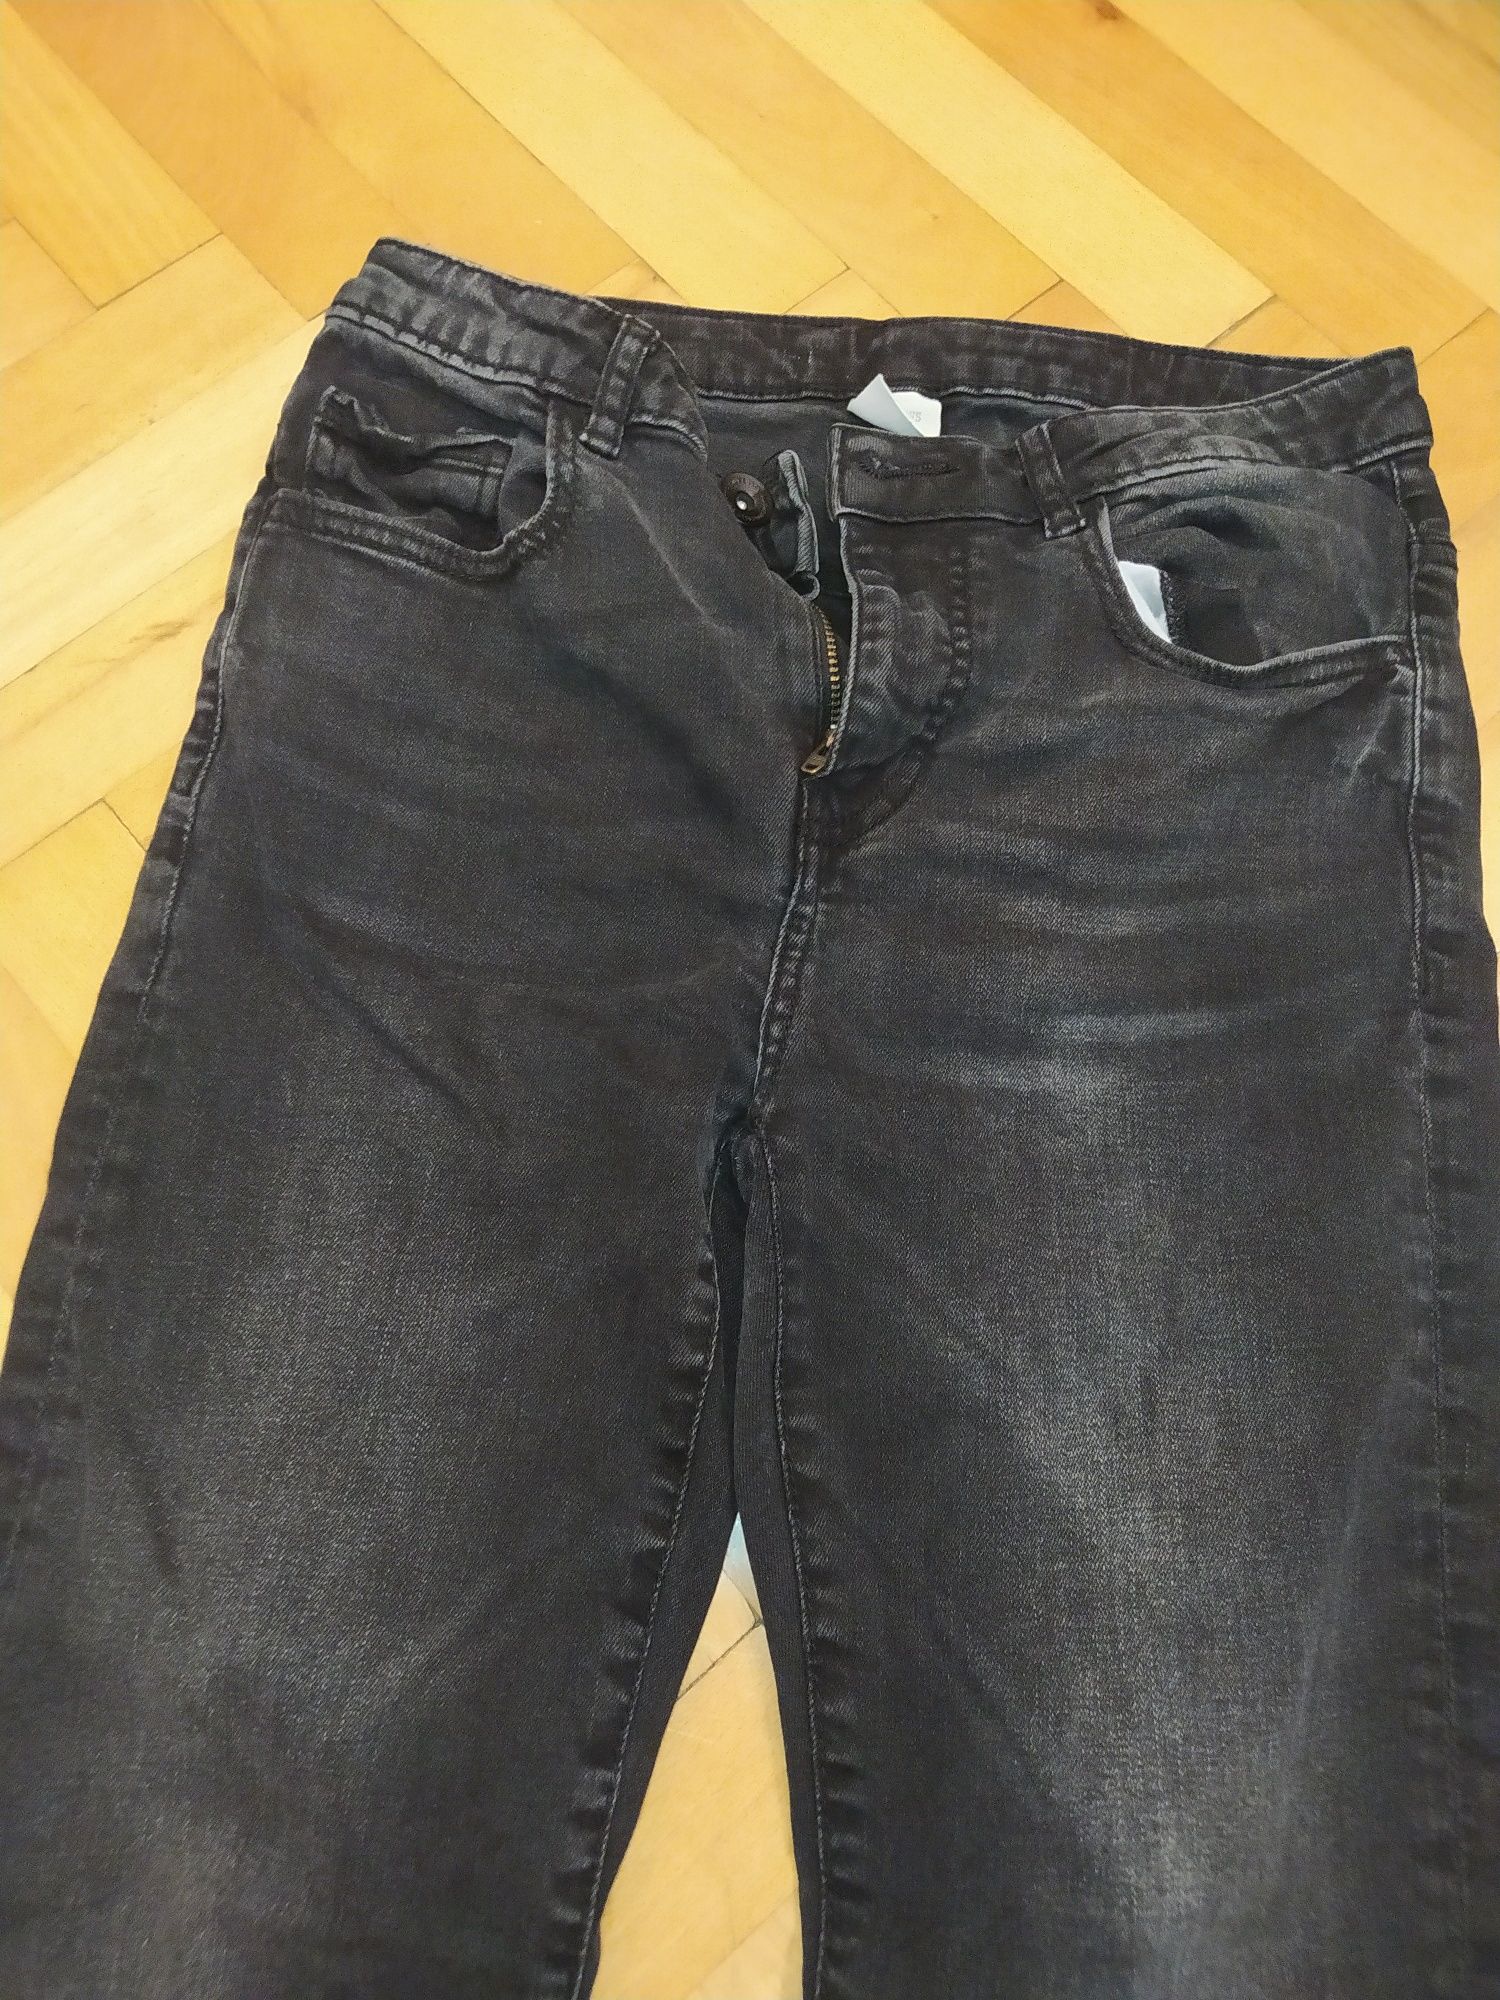 Spodnie jeansy rurki zara 164 czarne